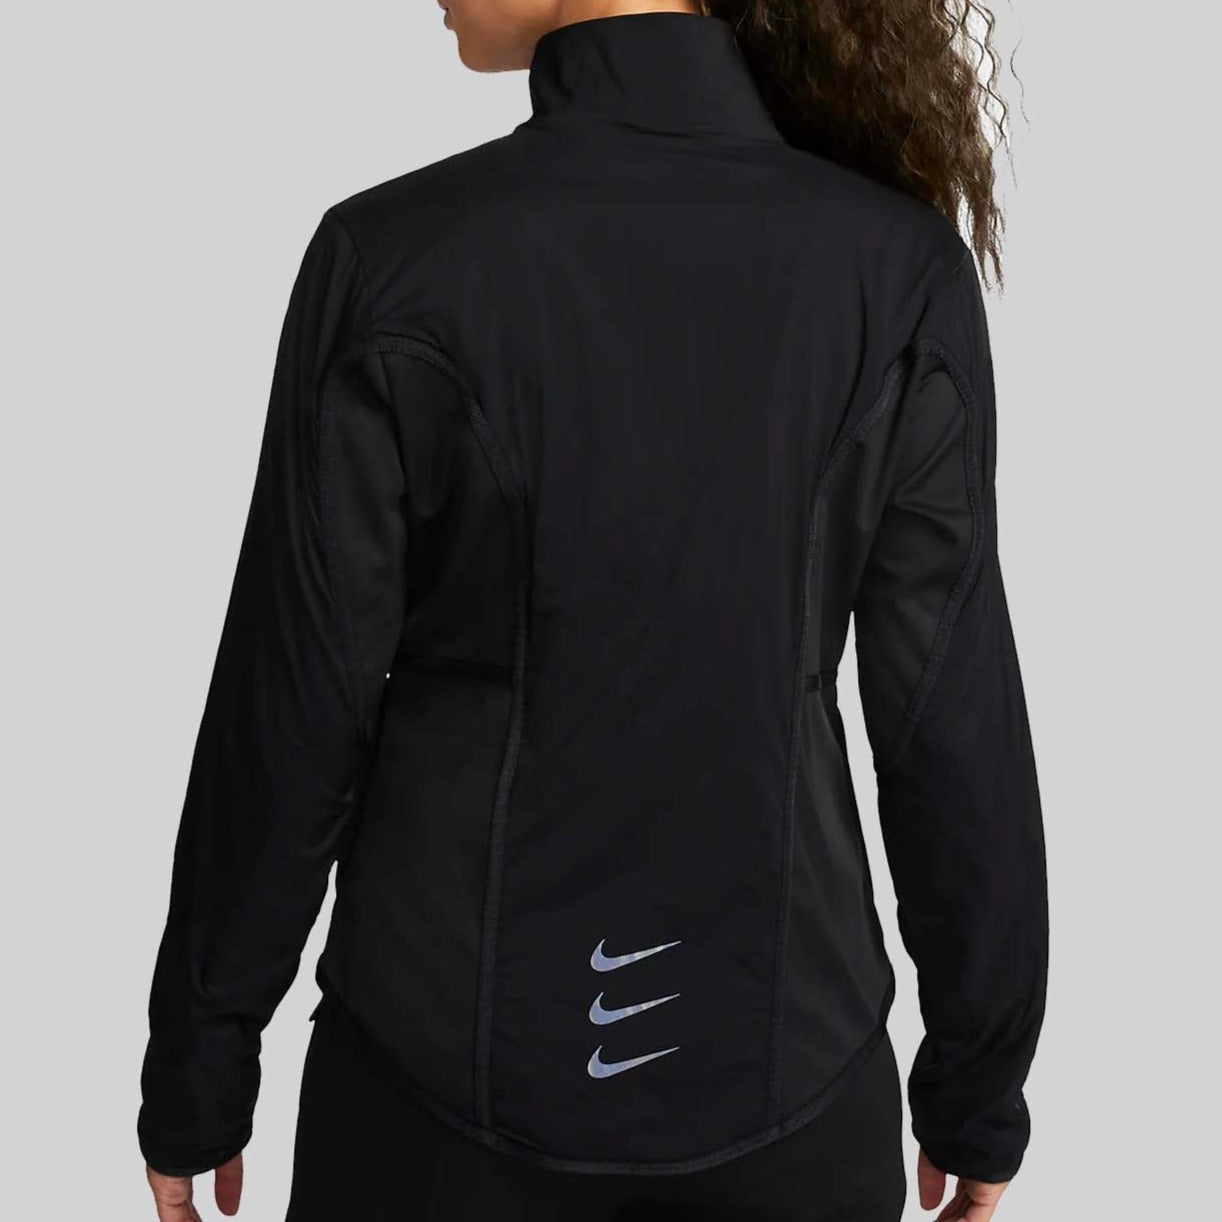 Womens Nike Storm Dri-Fit Jacket